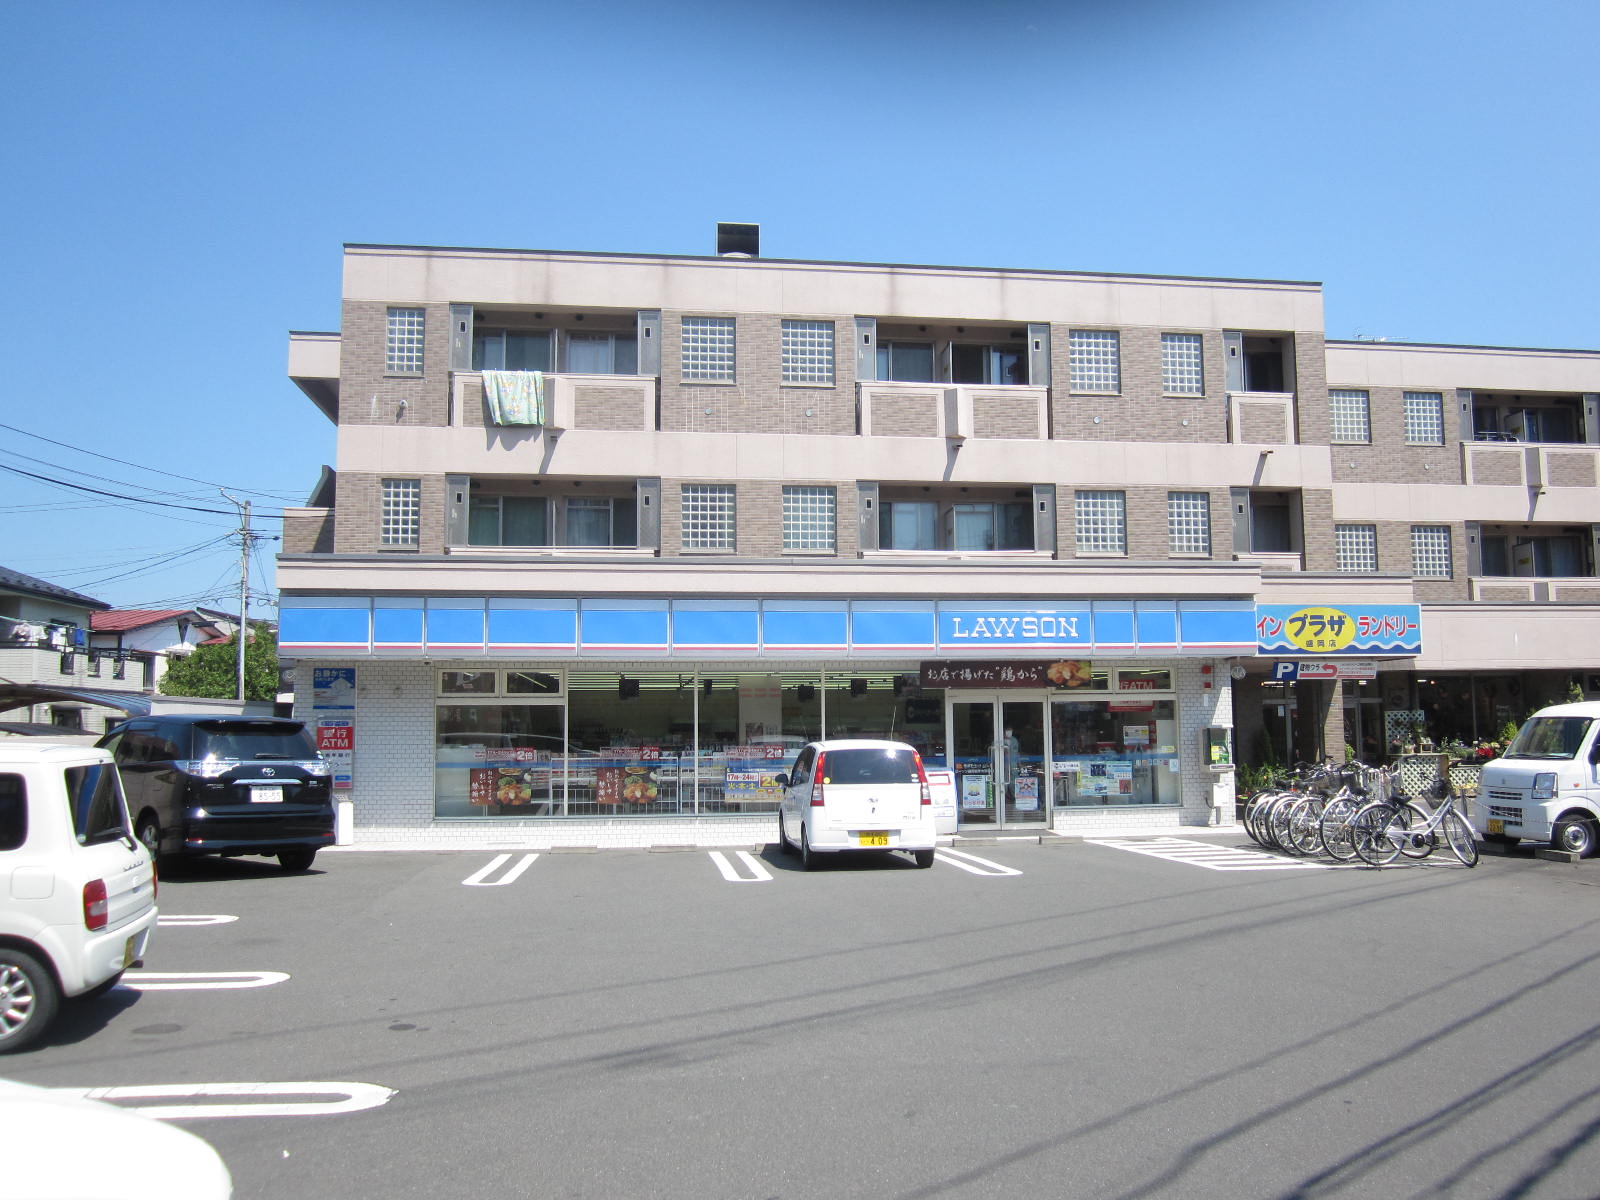 Convenience store. Lawson Morioka, Iwate pre-university store up (convenience store) 362m